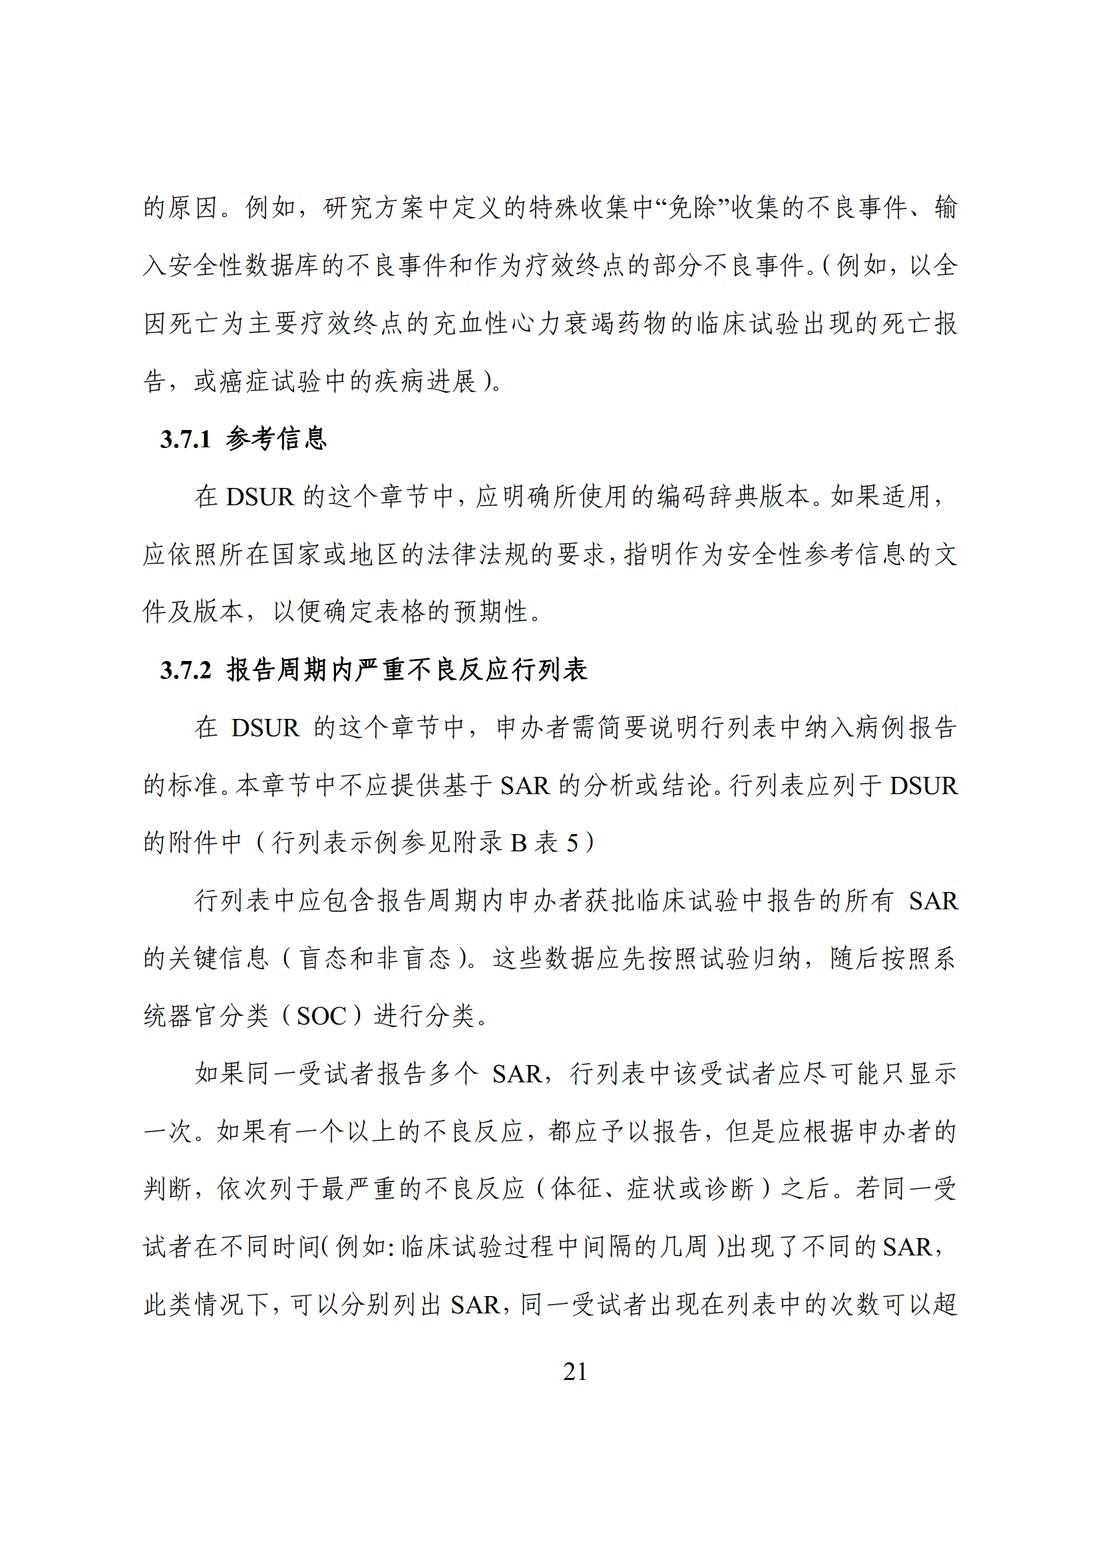 E2F 研发期间安全性更新报告(中文翻译公开征求意见稿)_26.jpg